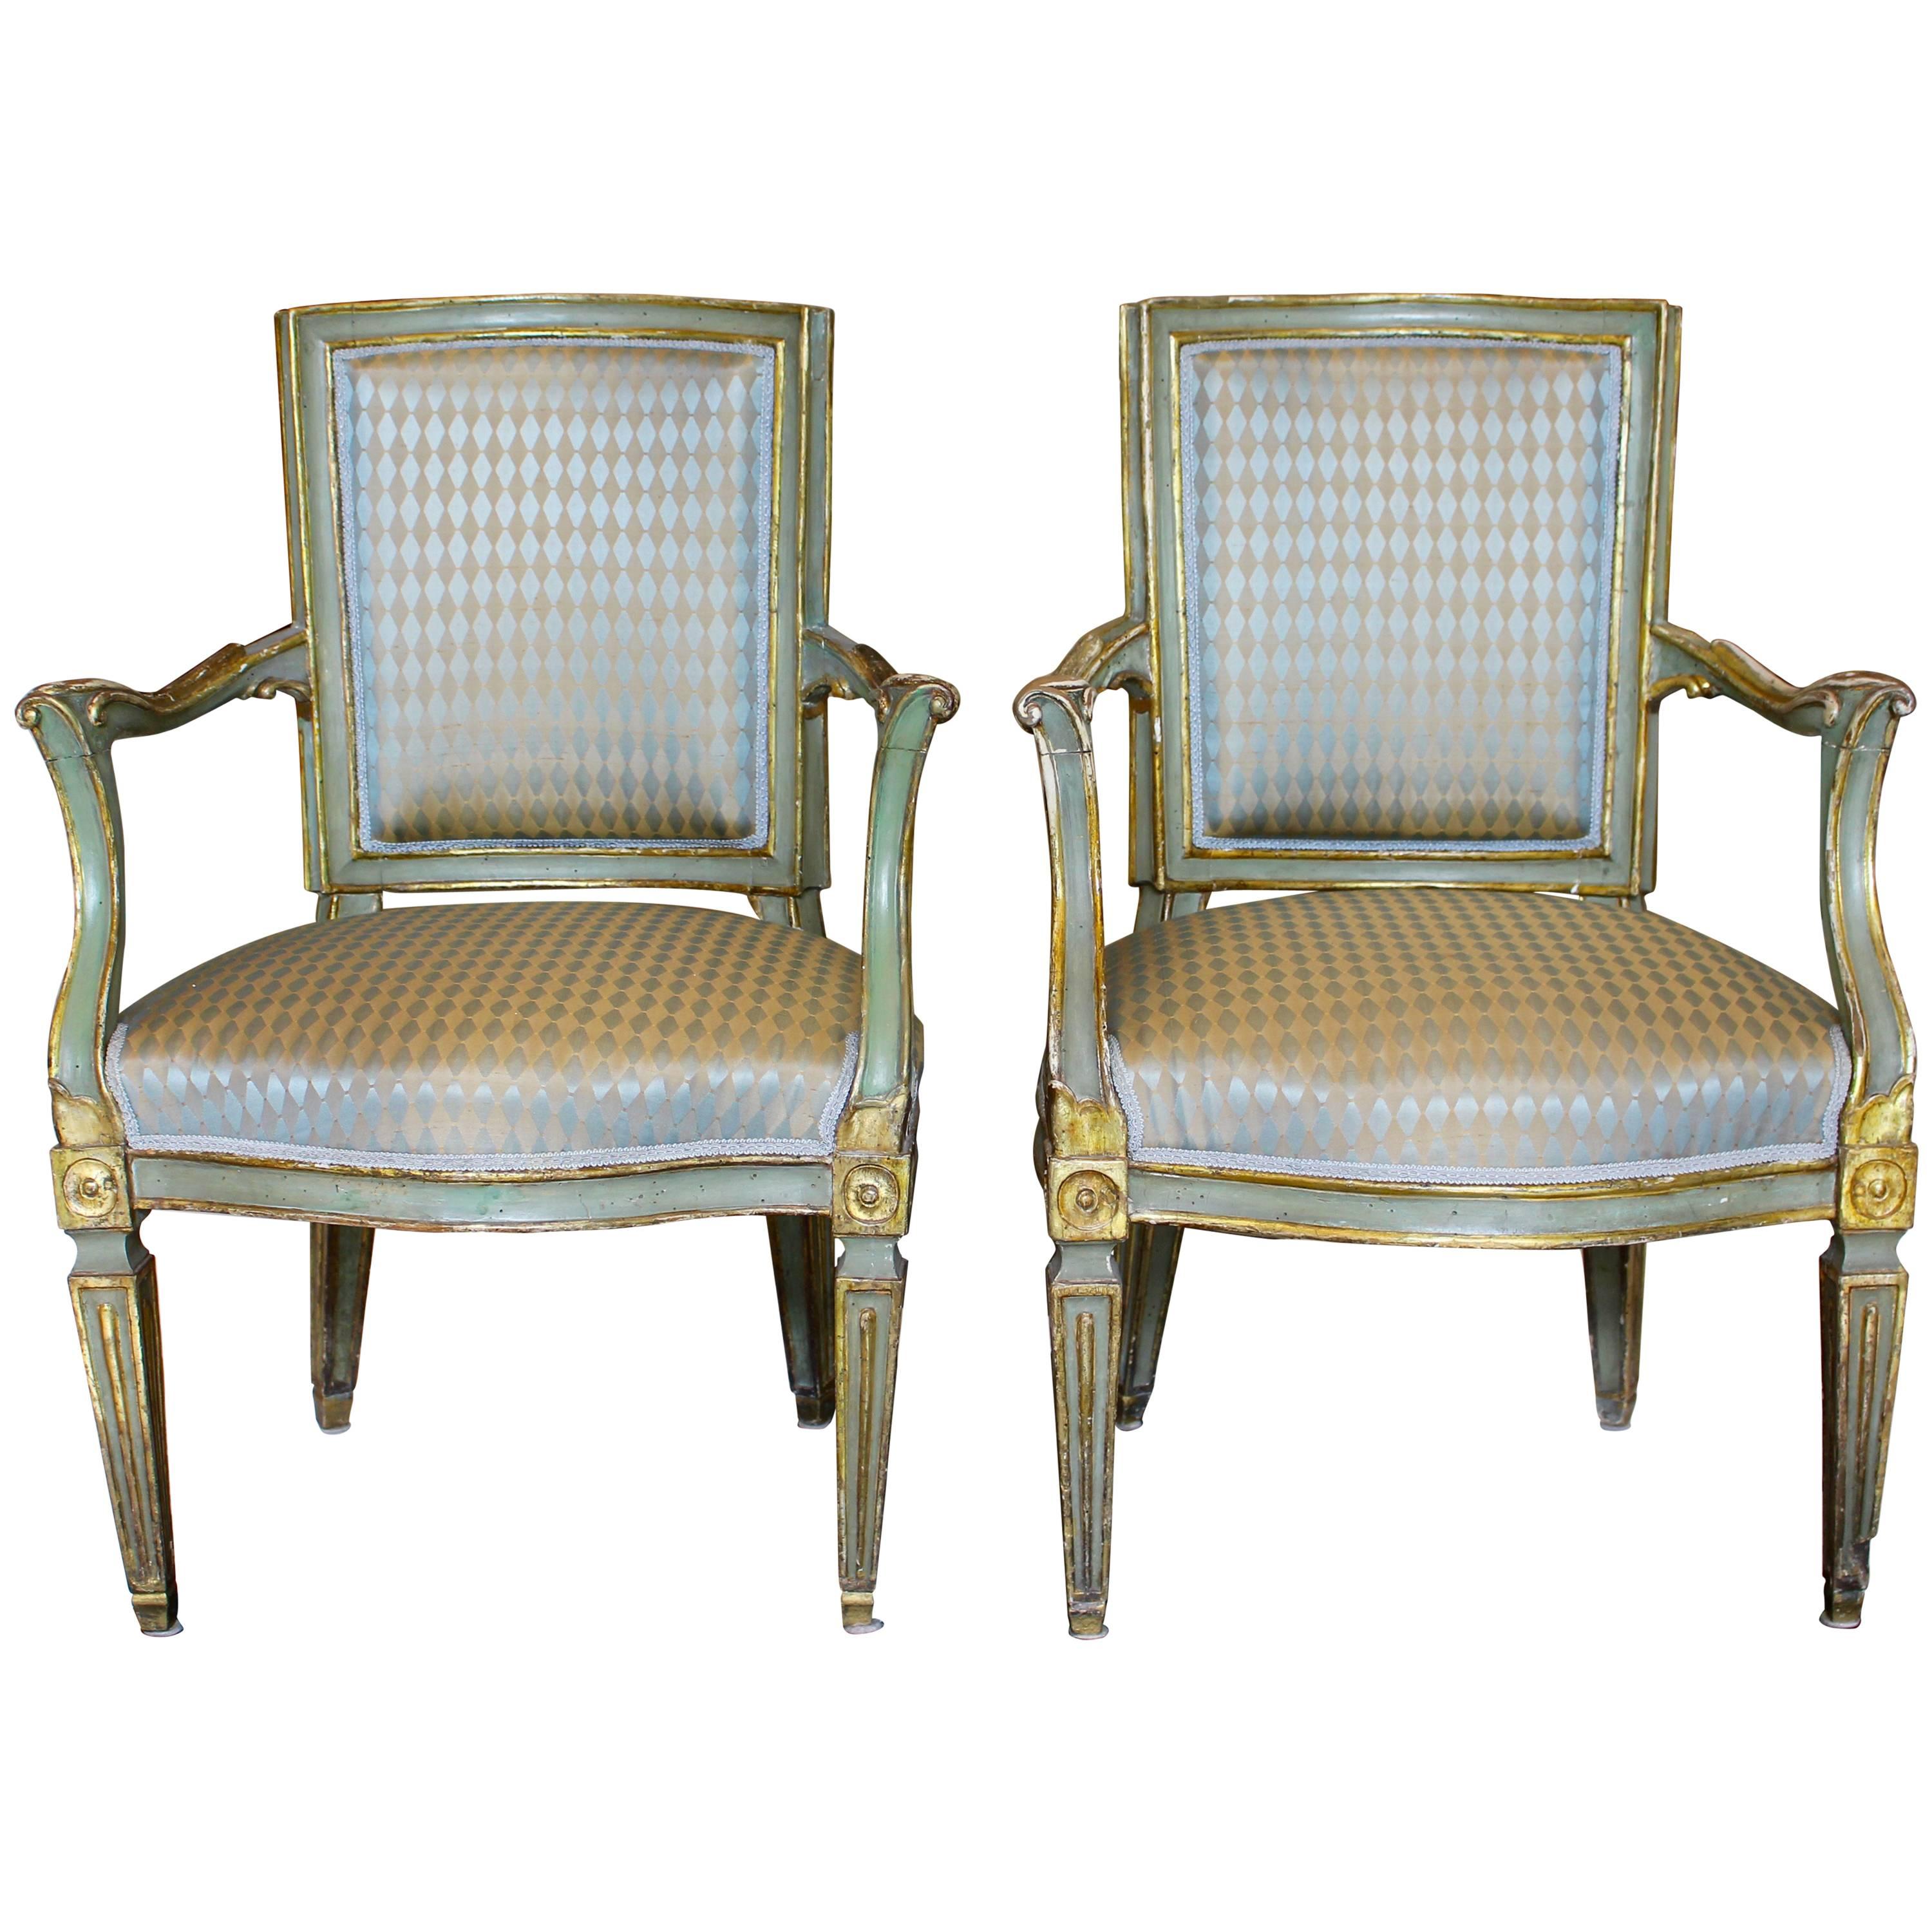 Paar italienische neoklassizistische, bemalte und teilweise vergoldete Sessel aus dem 18. Jahrhundert